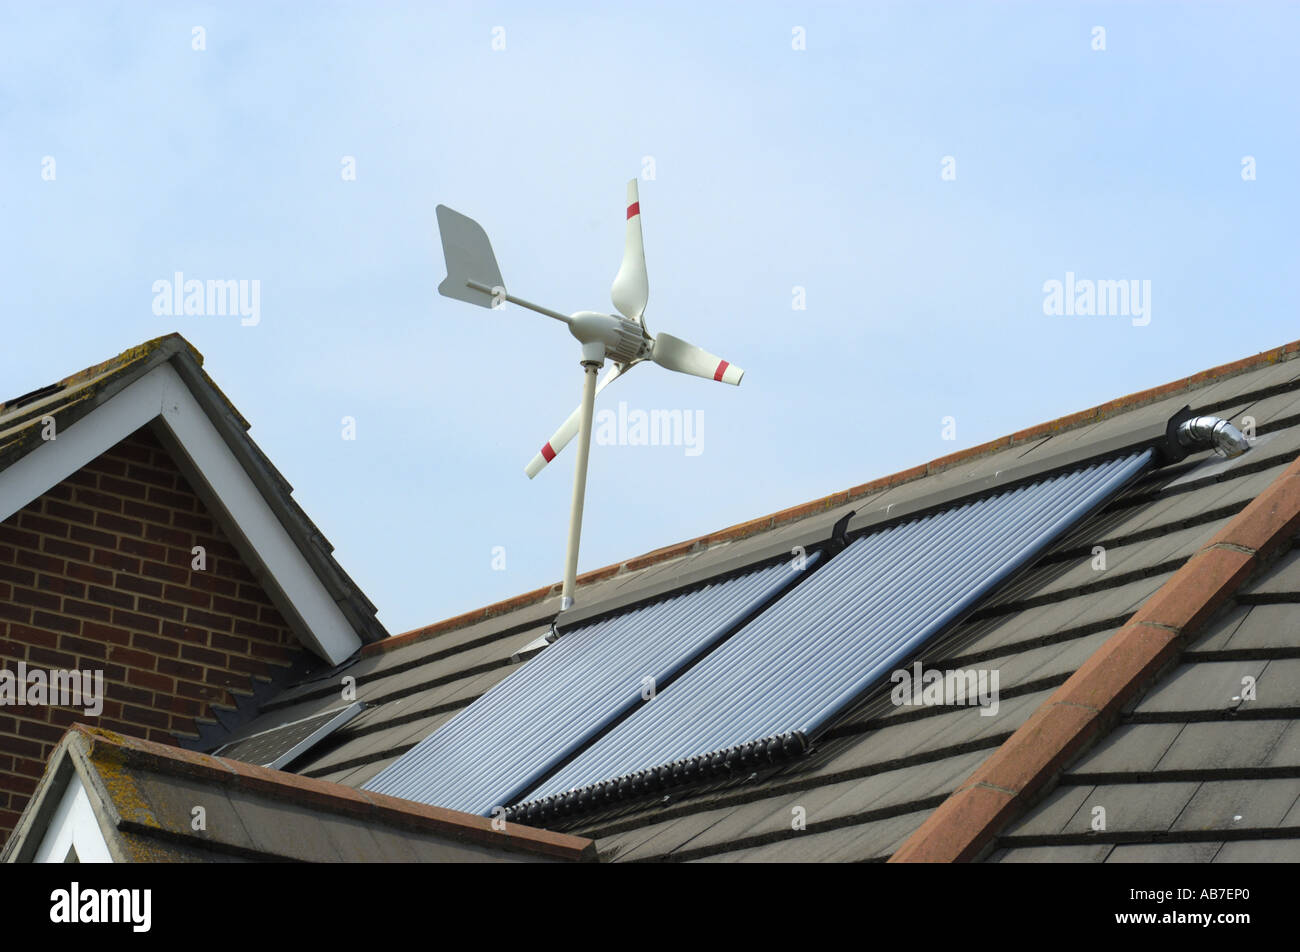 Micro Turbina Eolica fotovoltaica solare ed evacuato tubi solari sul tetto di casa a Ferndown Dorset Inghilterra Foto Stock